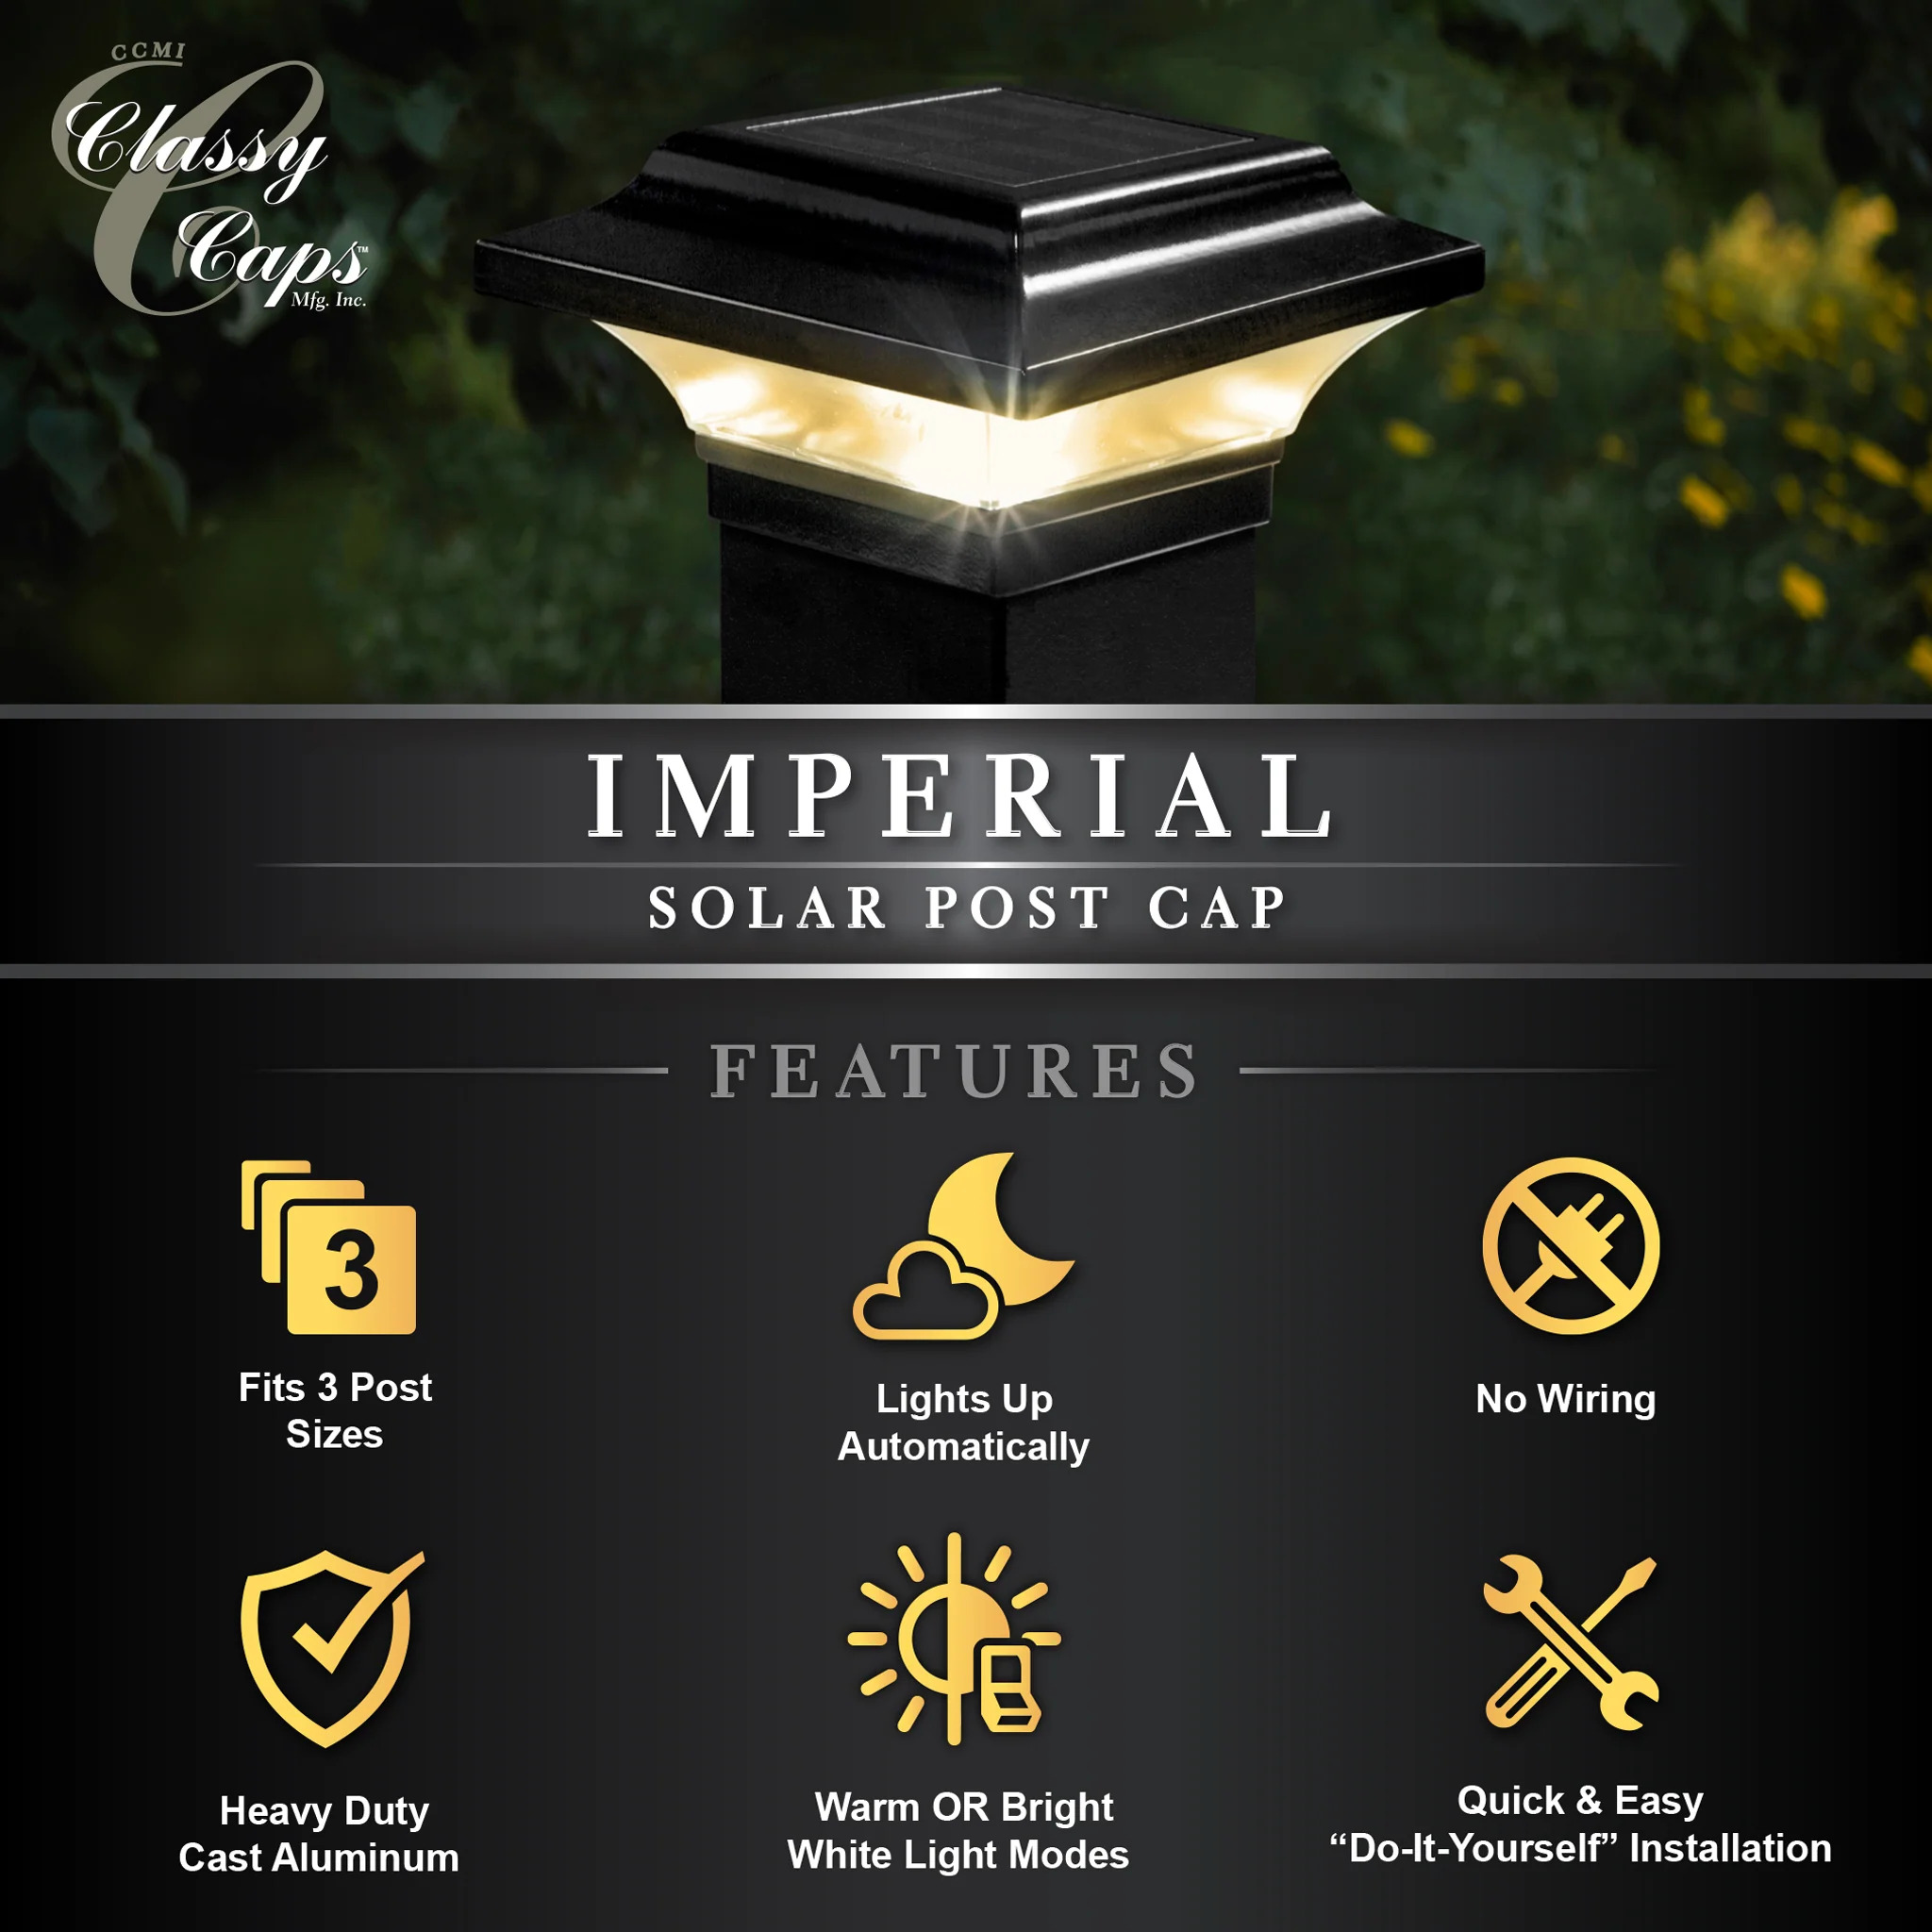 Classy Caps Solar Post Caps - Features